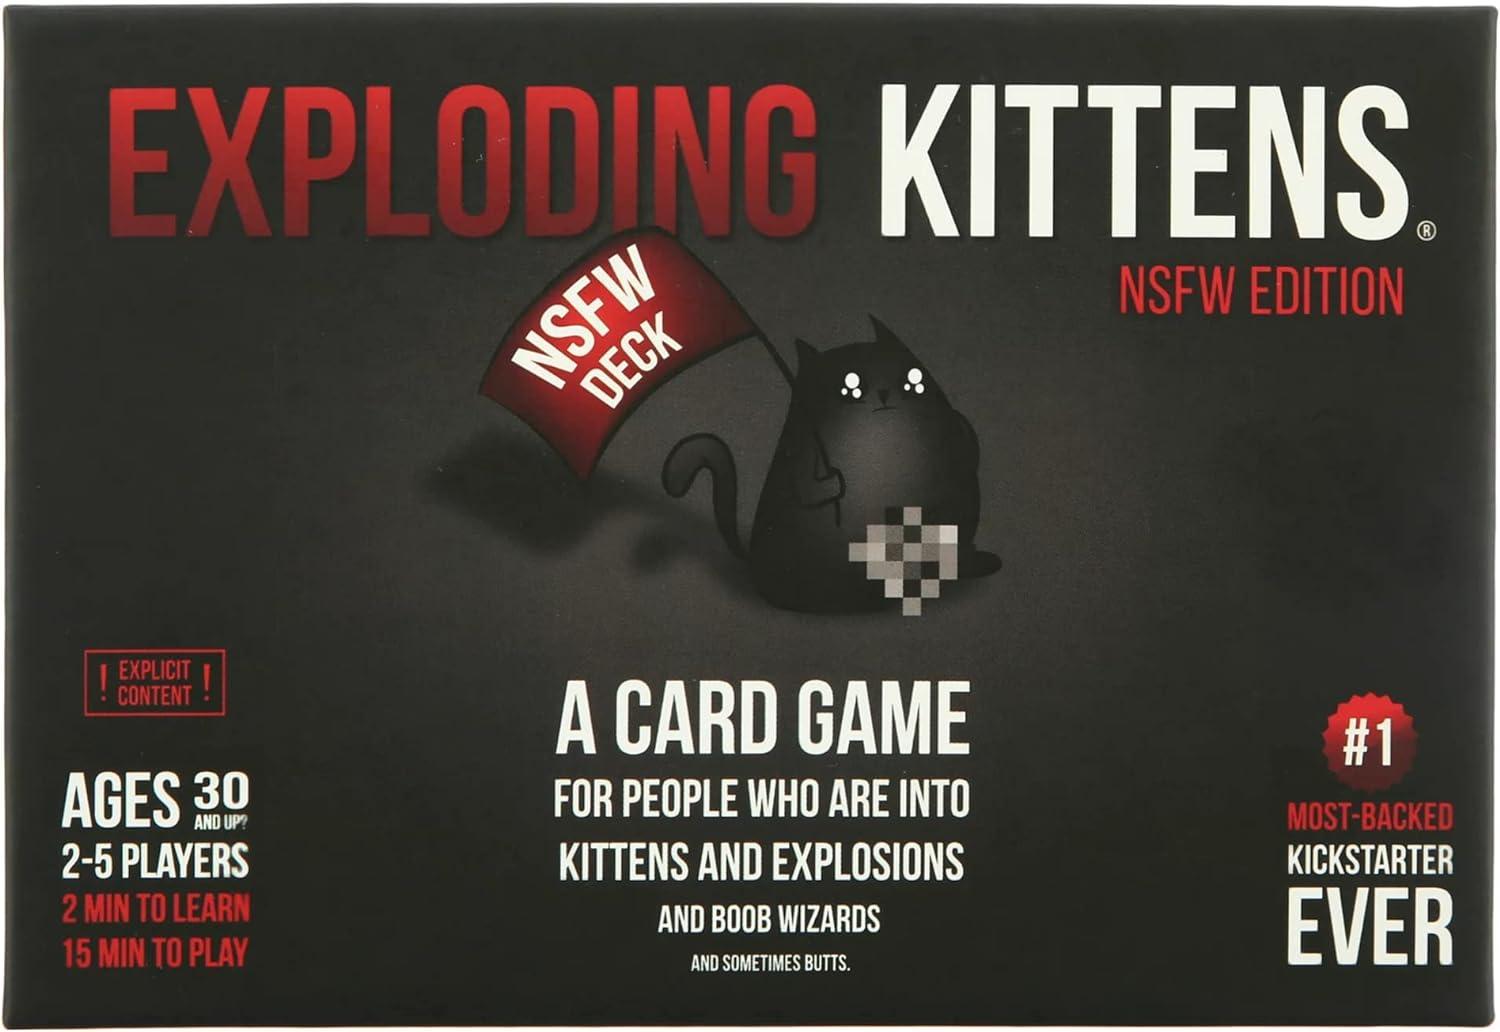 Exploding Kitten Card Game